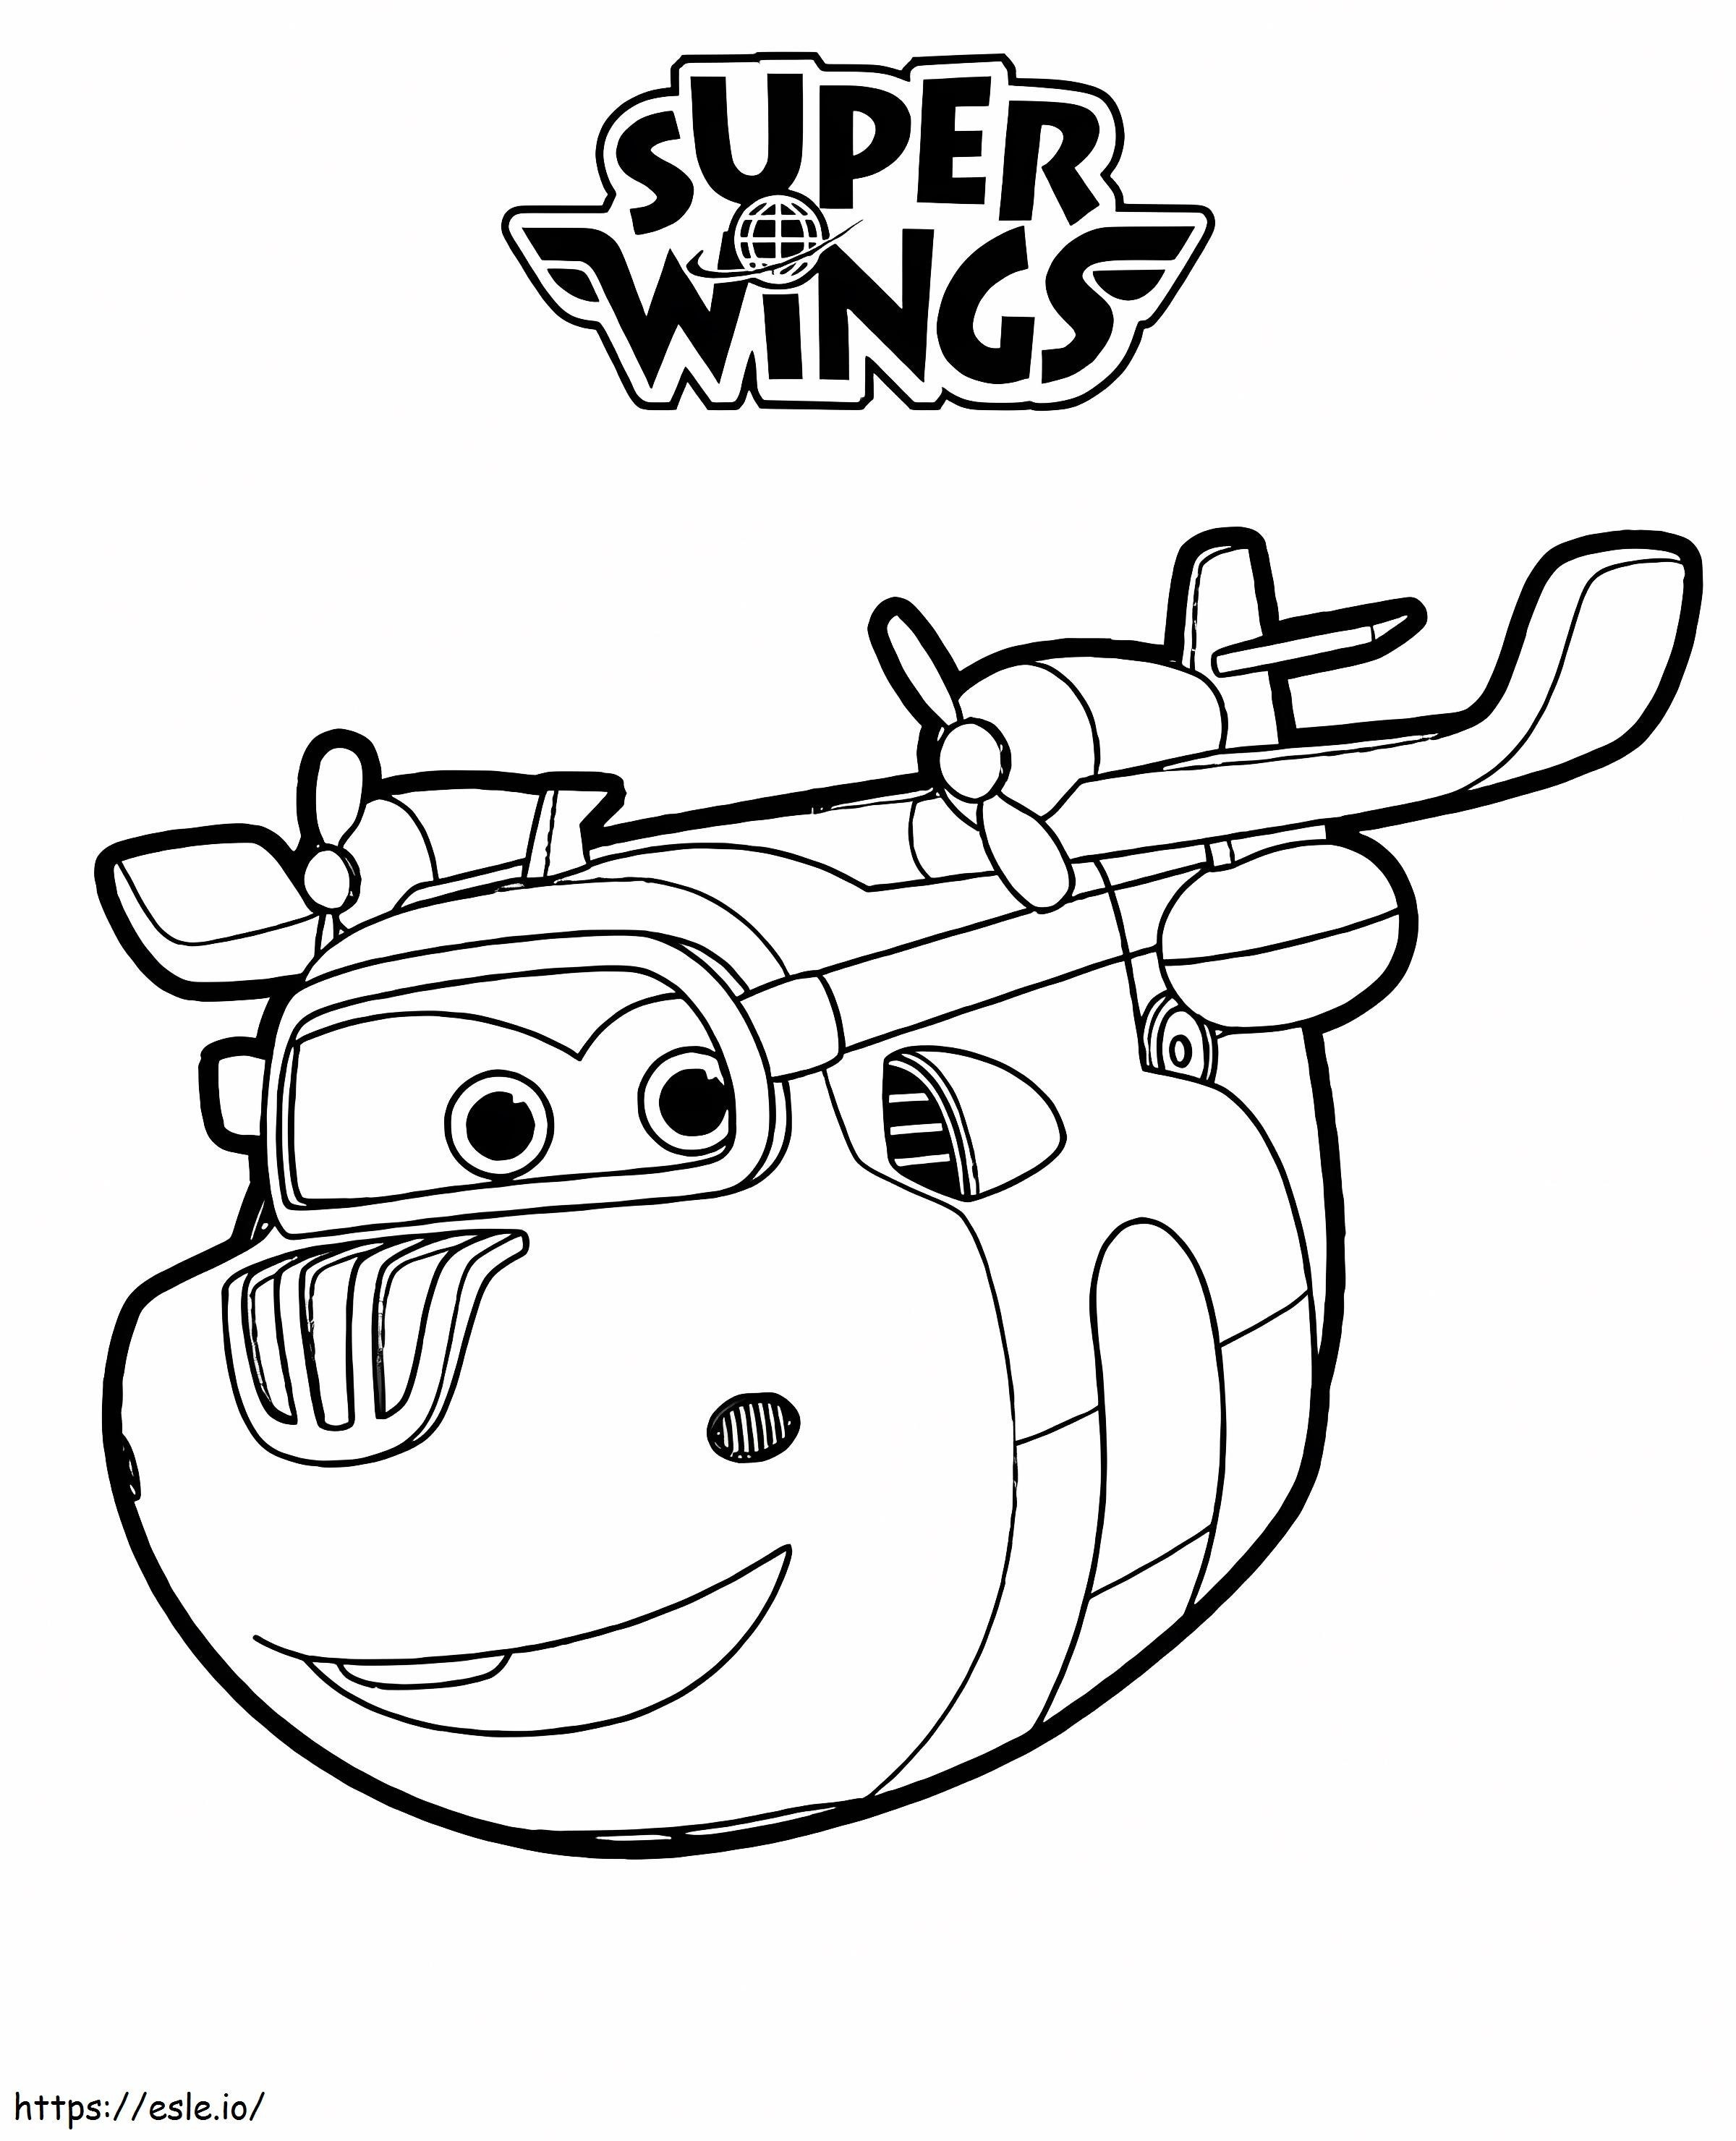 Donnie Super Wings 1 kolorowanka